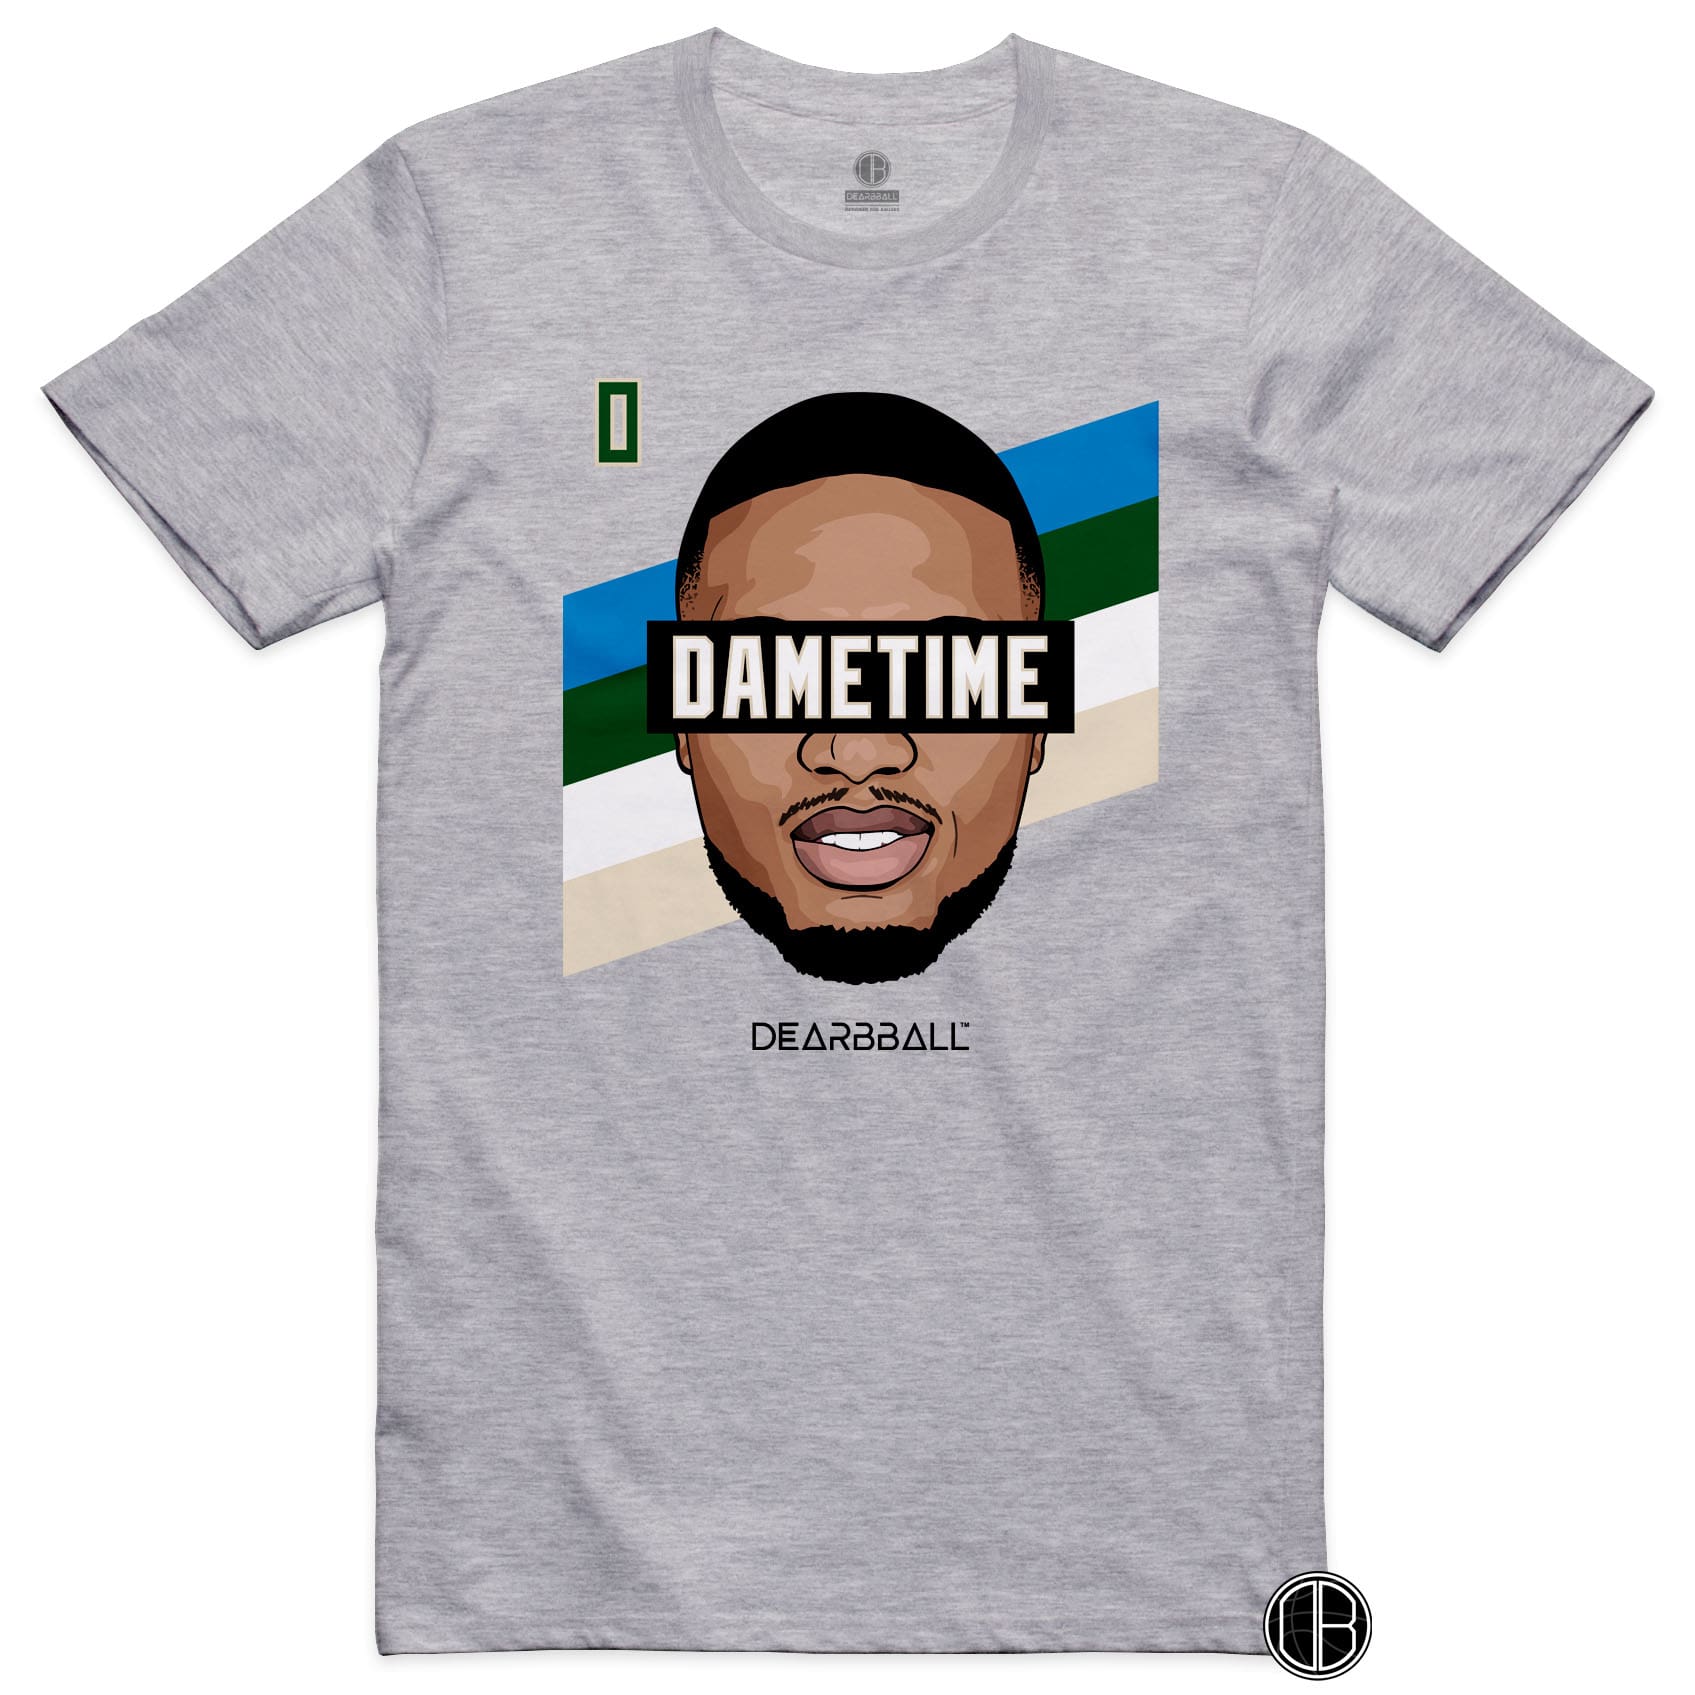 DearBBall T-Shirt - DameTime Stripes 0 Edition